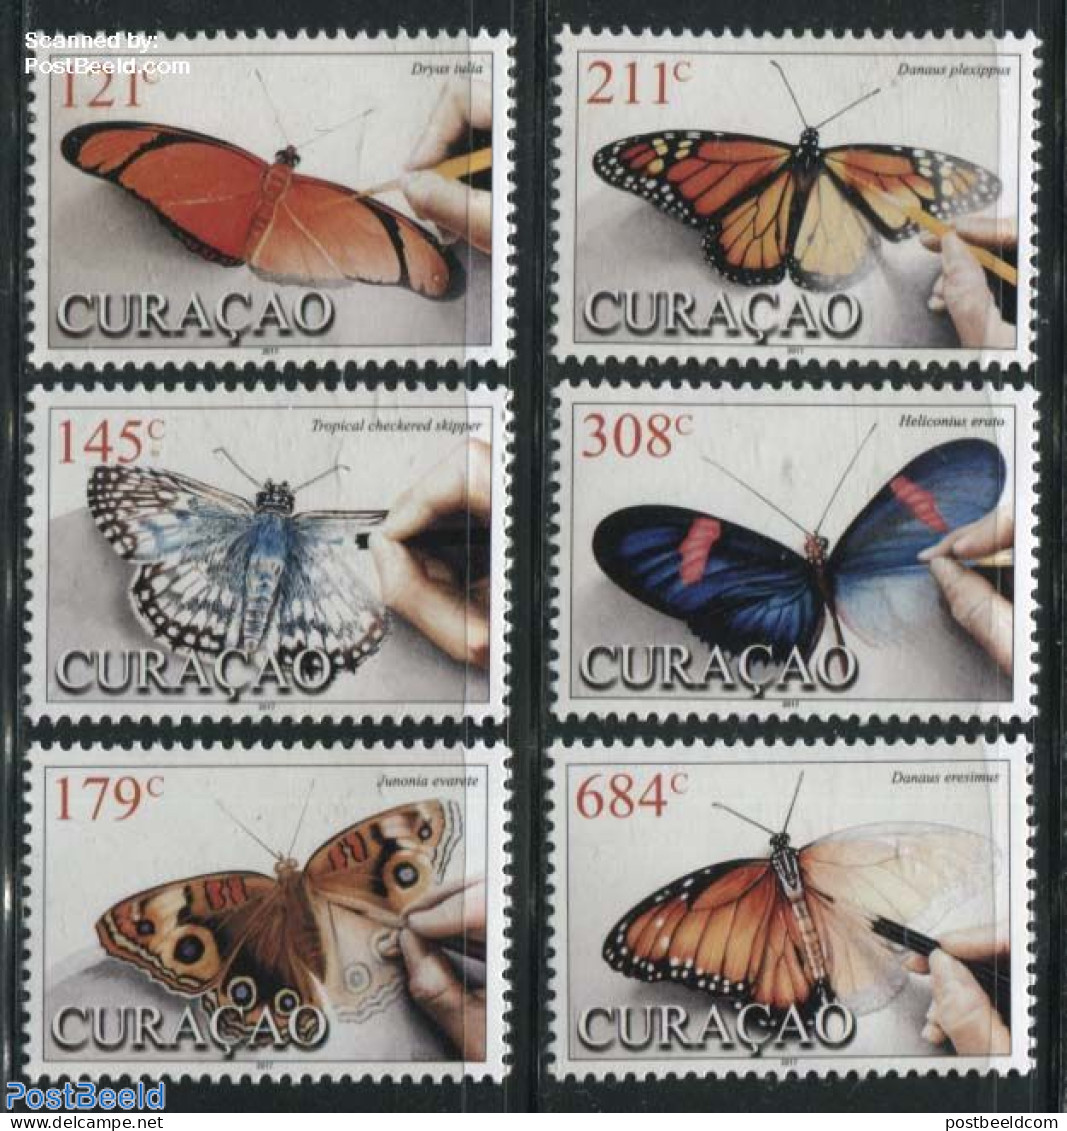 Curaçao 2017 Butterflies 6v, Mint NH, Nature - Butterflies - Curazao, Antillas Holandesas, Aruba